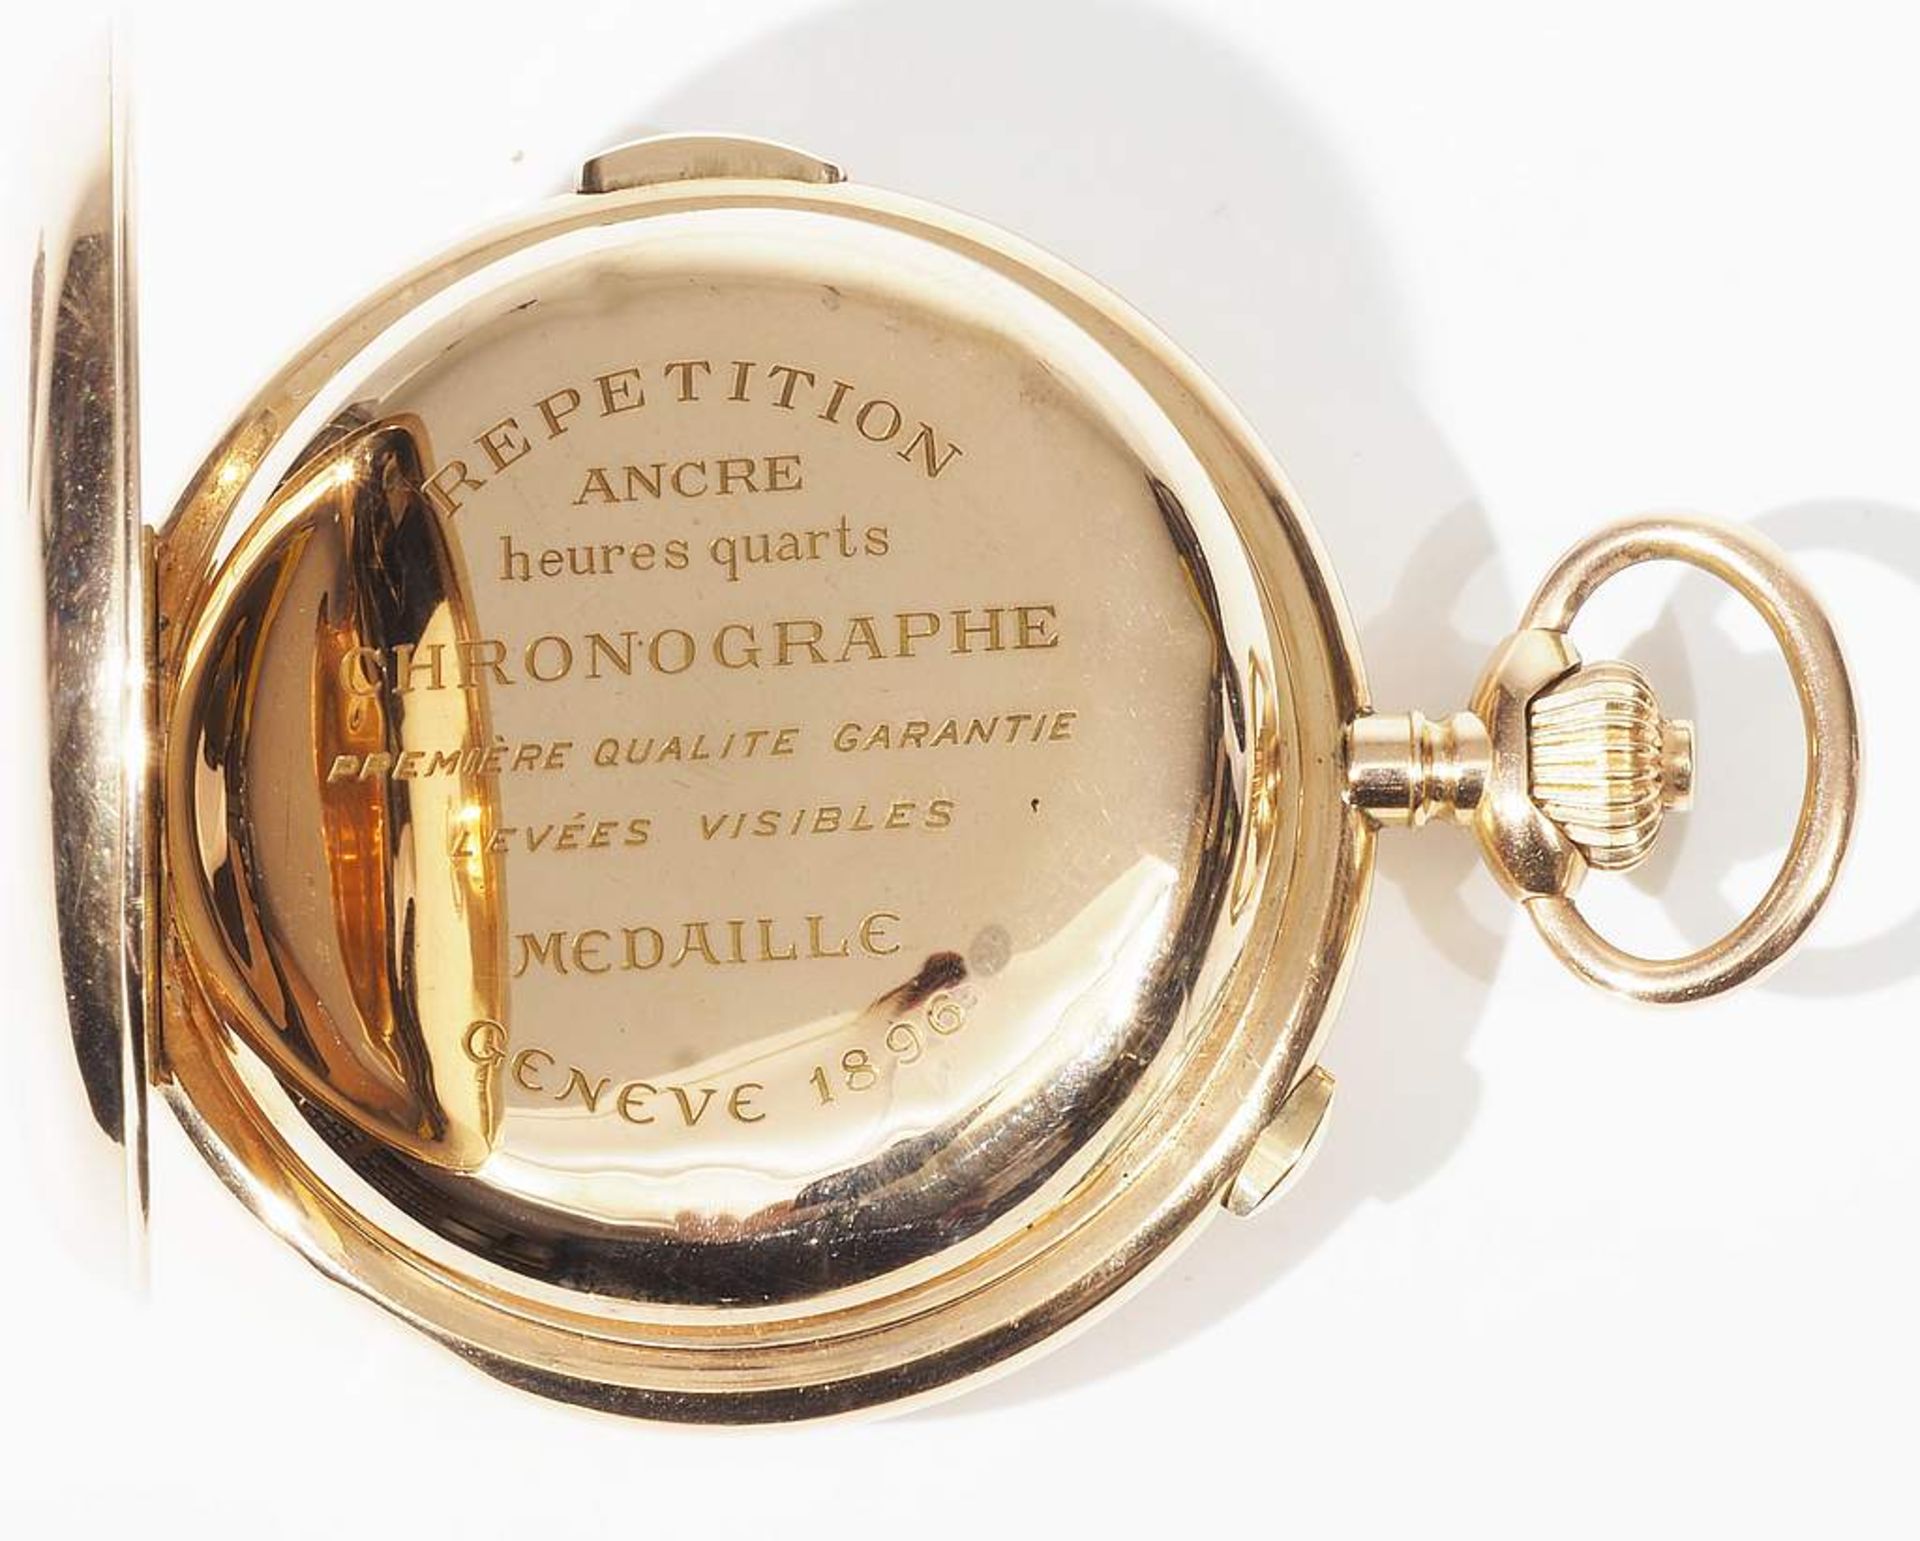 Savonette Taschenuhr mit Schlagwerk.(Repetition) und Chronograph, um 1900.  - Bild 5 aus 8